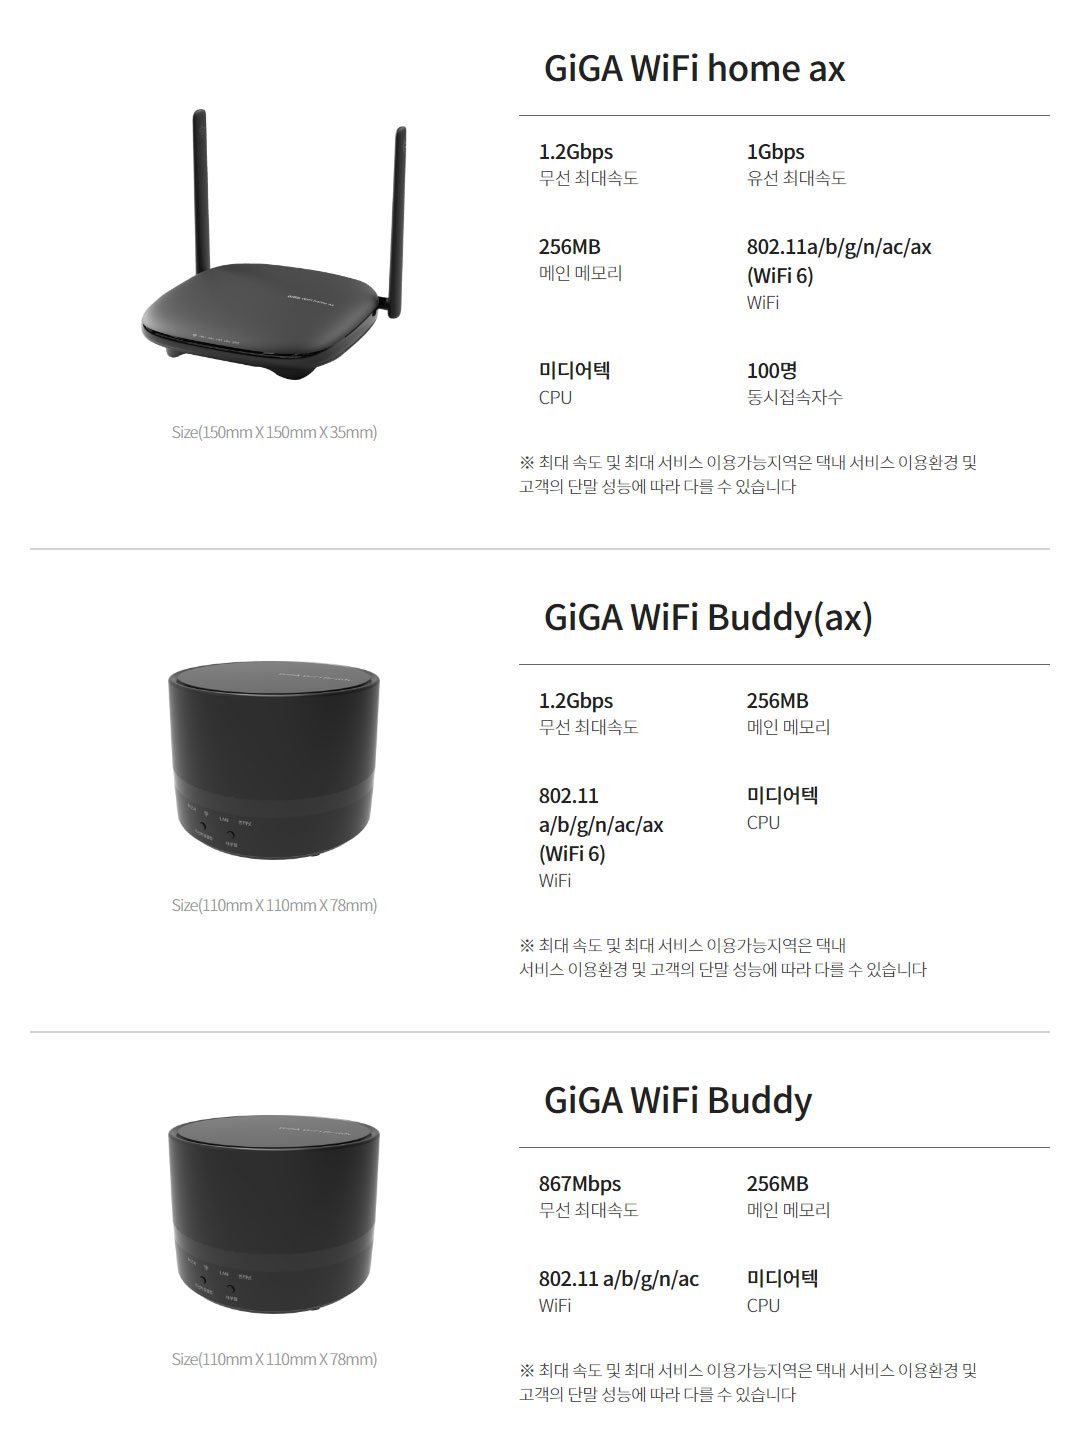 GiGA WiFi home ax, GiGA WiFi Buddy(ax), GiGA WiFi Buddy